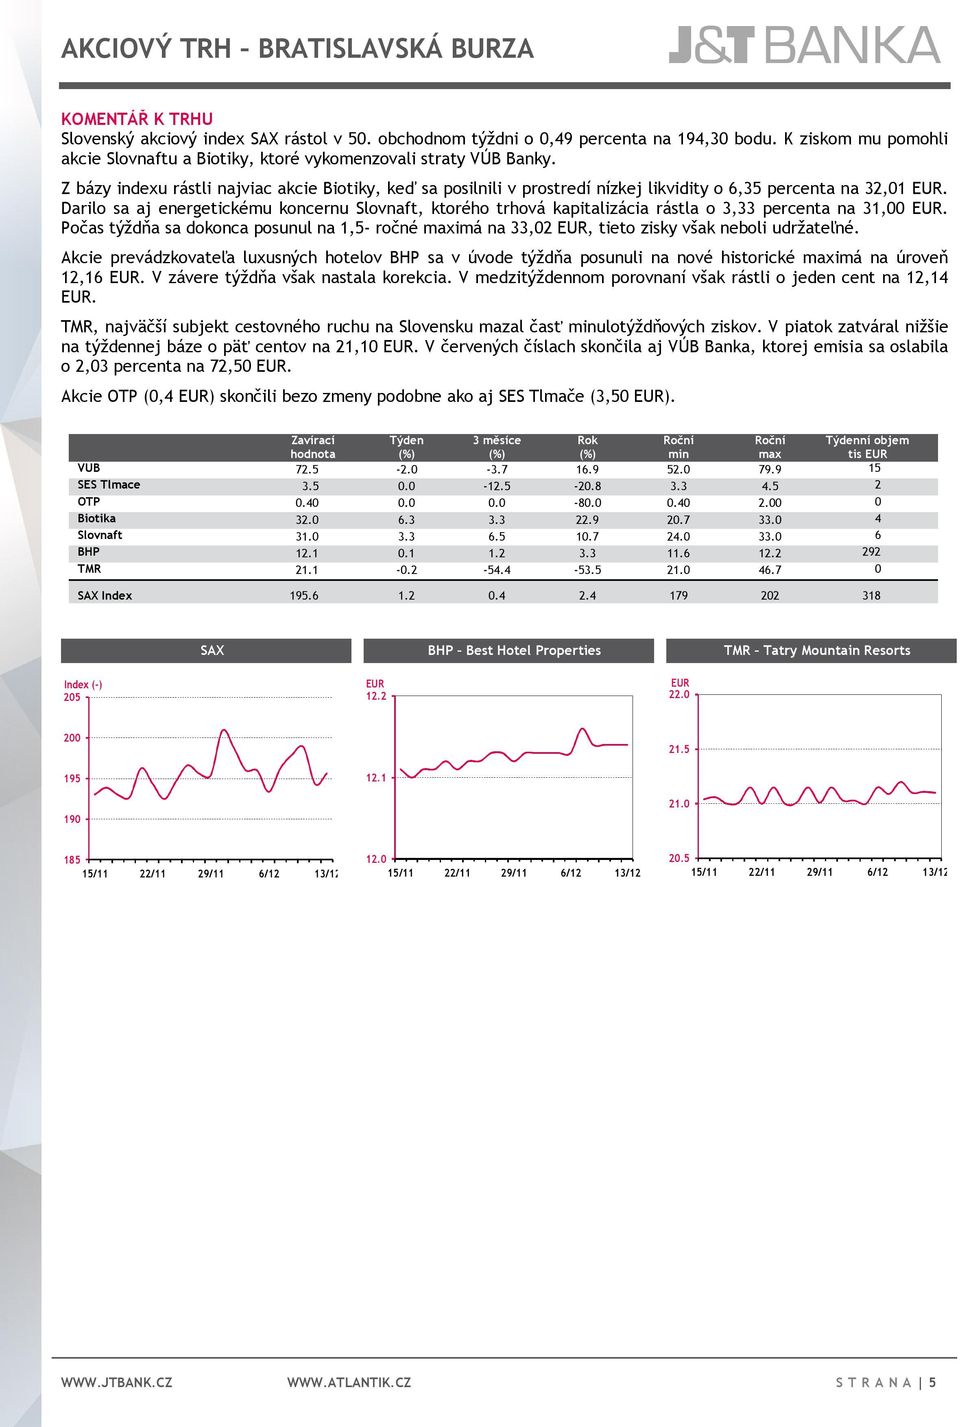 Z bázy indexu rástli najviac akcie Biotiky, keď sa posilnili v prostredí nízkej likvidity o 6,35 percenta na 32,01 EUR.